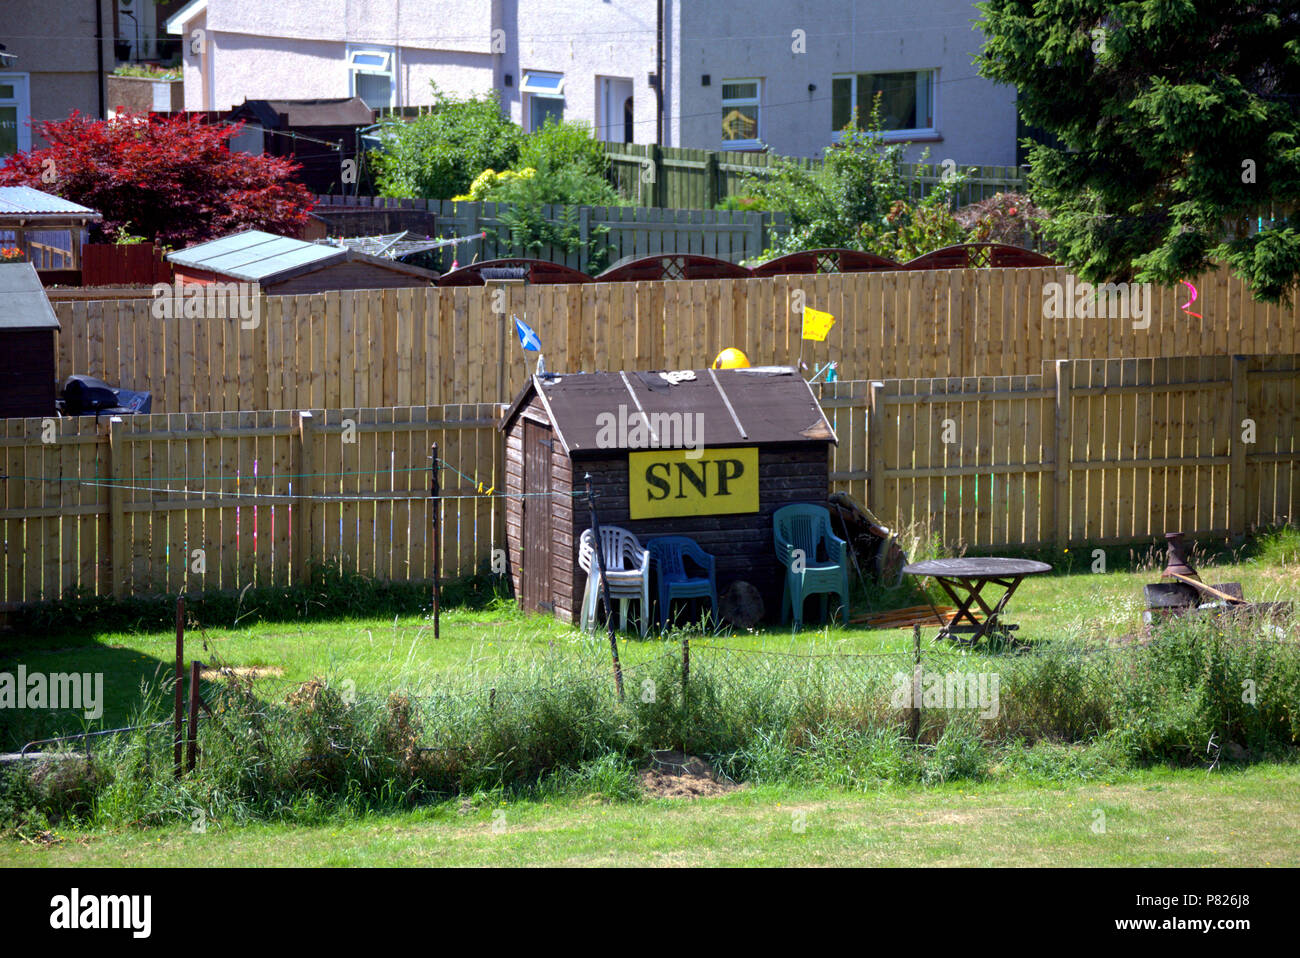 Abri de jardin de banlieue en politique Parti national écossais SNP drapeau sautoir lion d'arrière-cour de la politique d'amd Banque D'Images